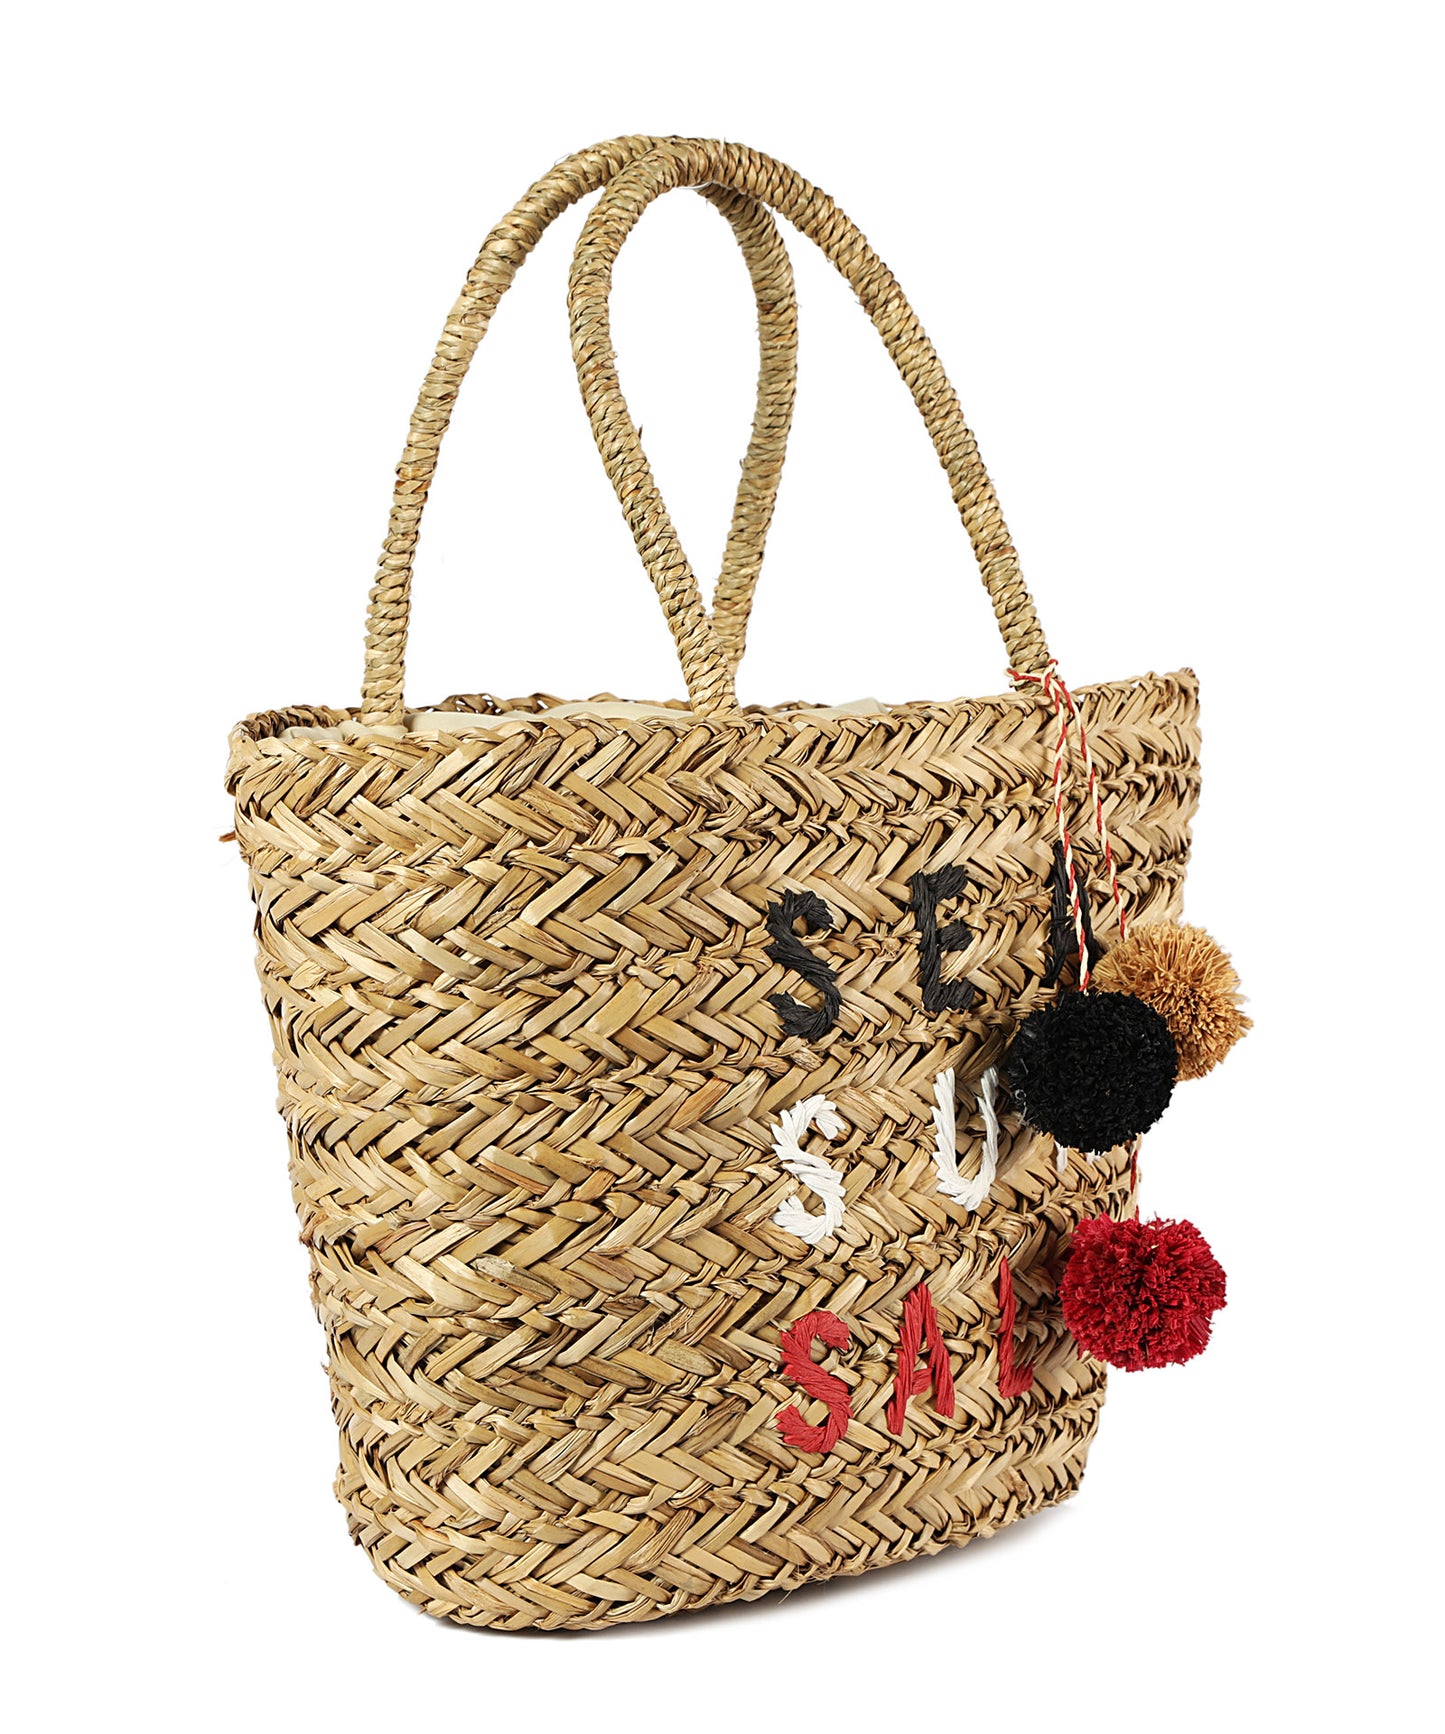 Wicker Bag Basket 74000283-911